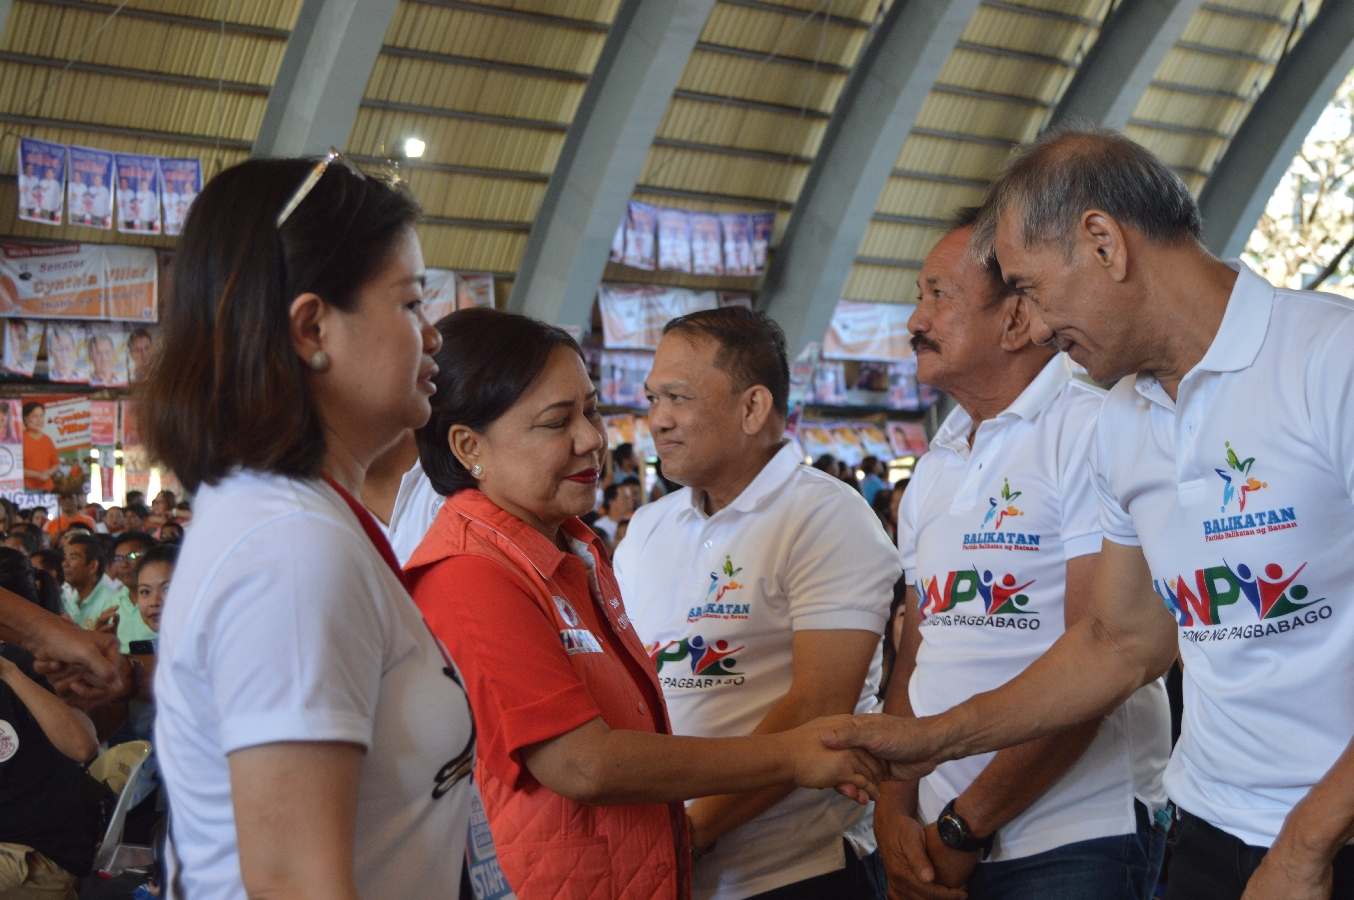 Hugpong campaign caravan draws 10,000 people in Bataan